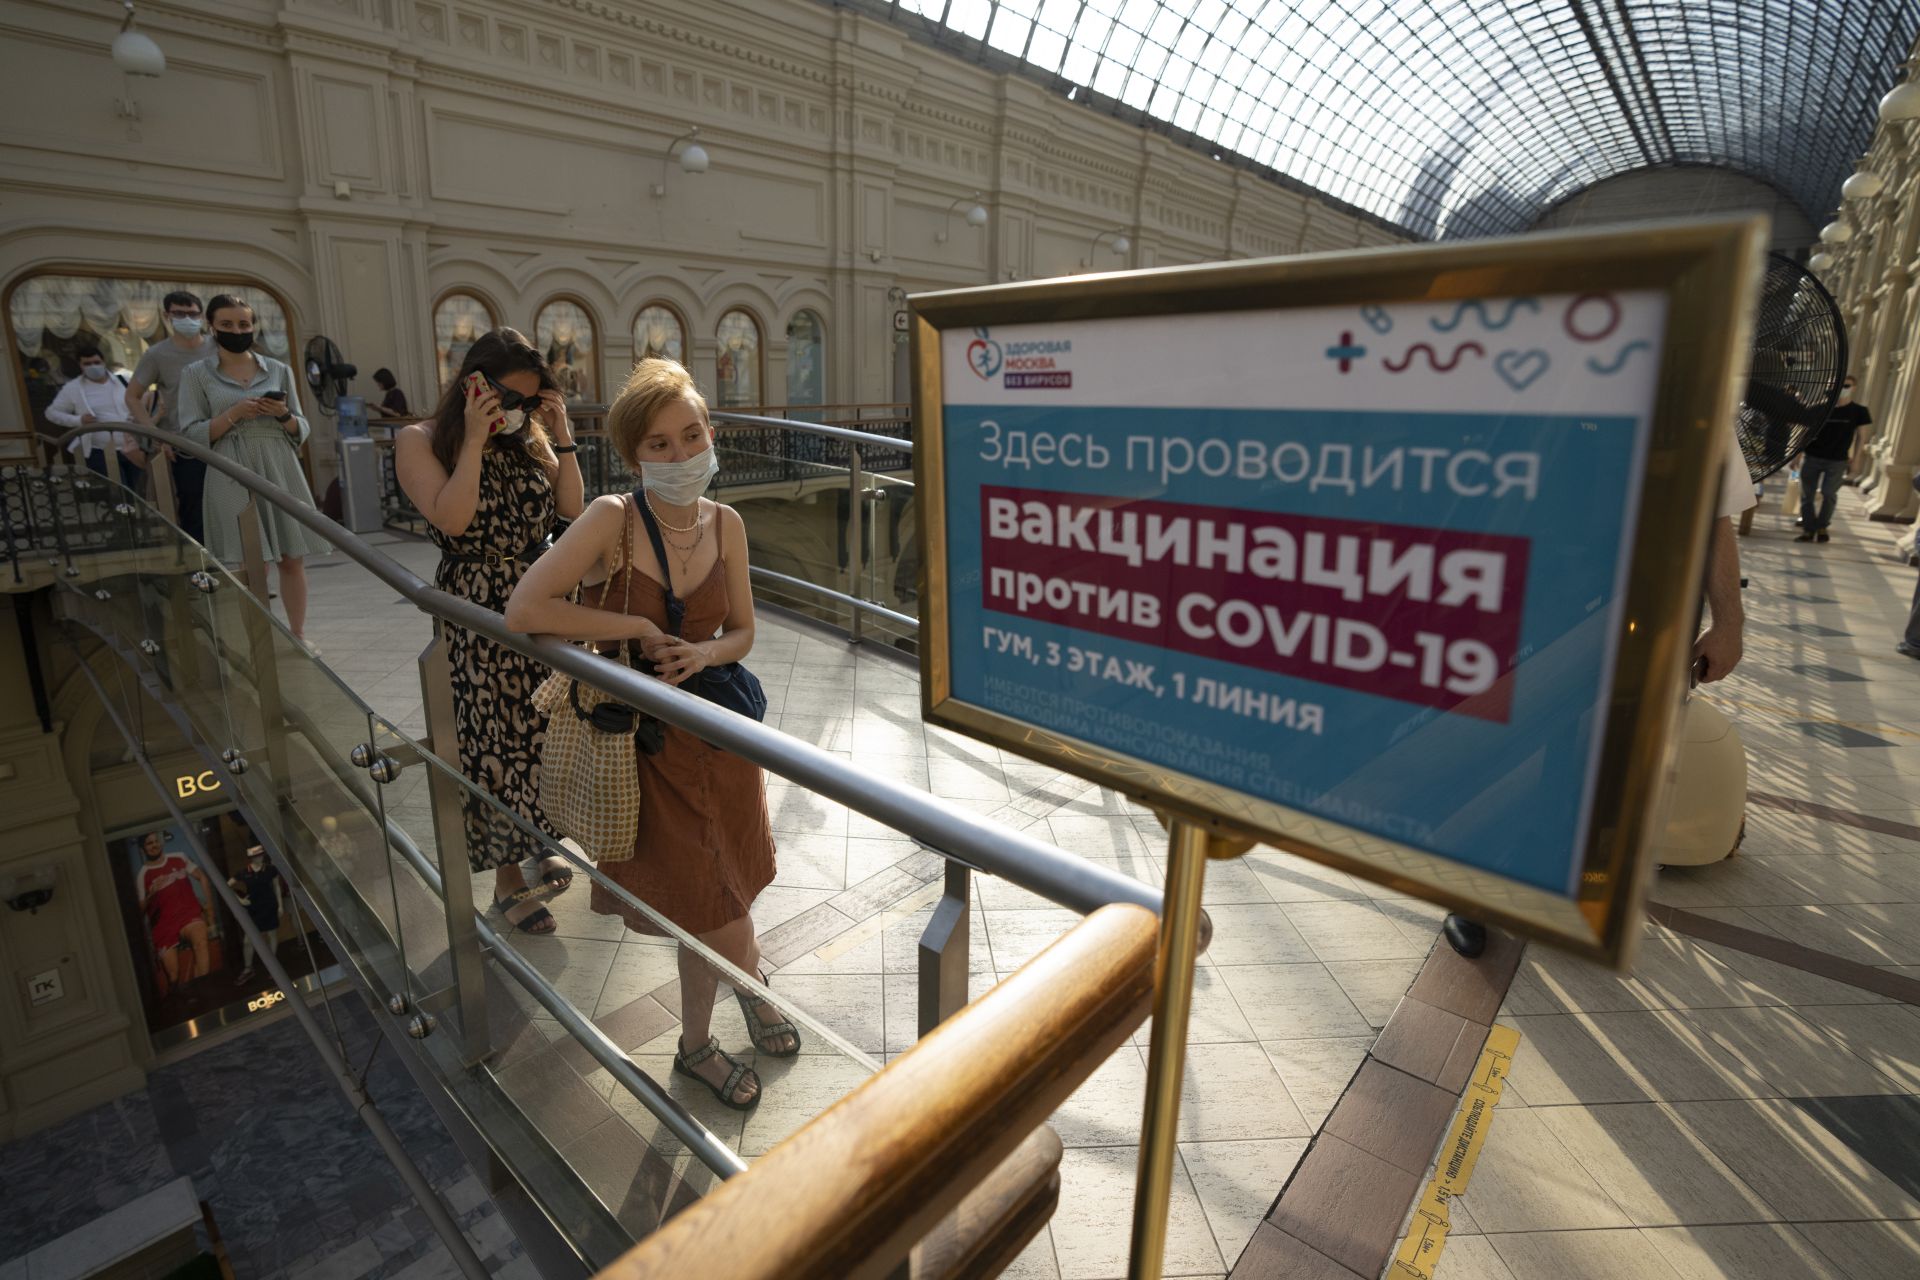 Хората застават на опашка за ваксина срещу коронавирус в център в ГУМ, Държавния универсален магазин, на Червения площад в Москва